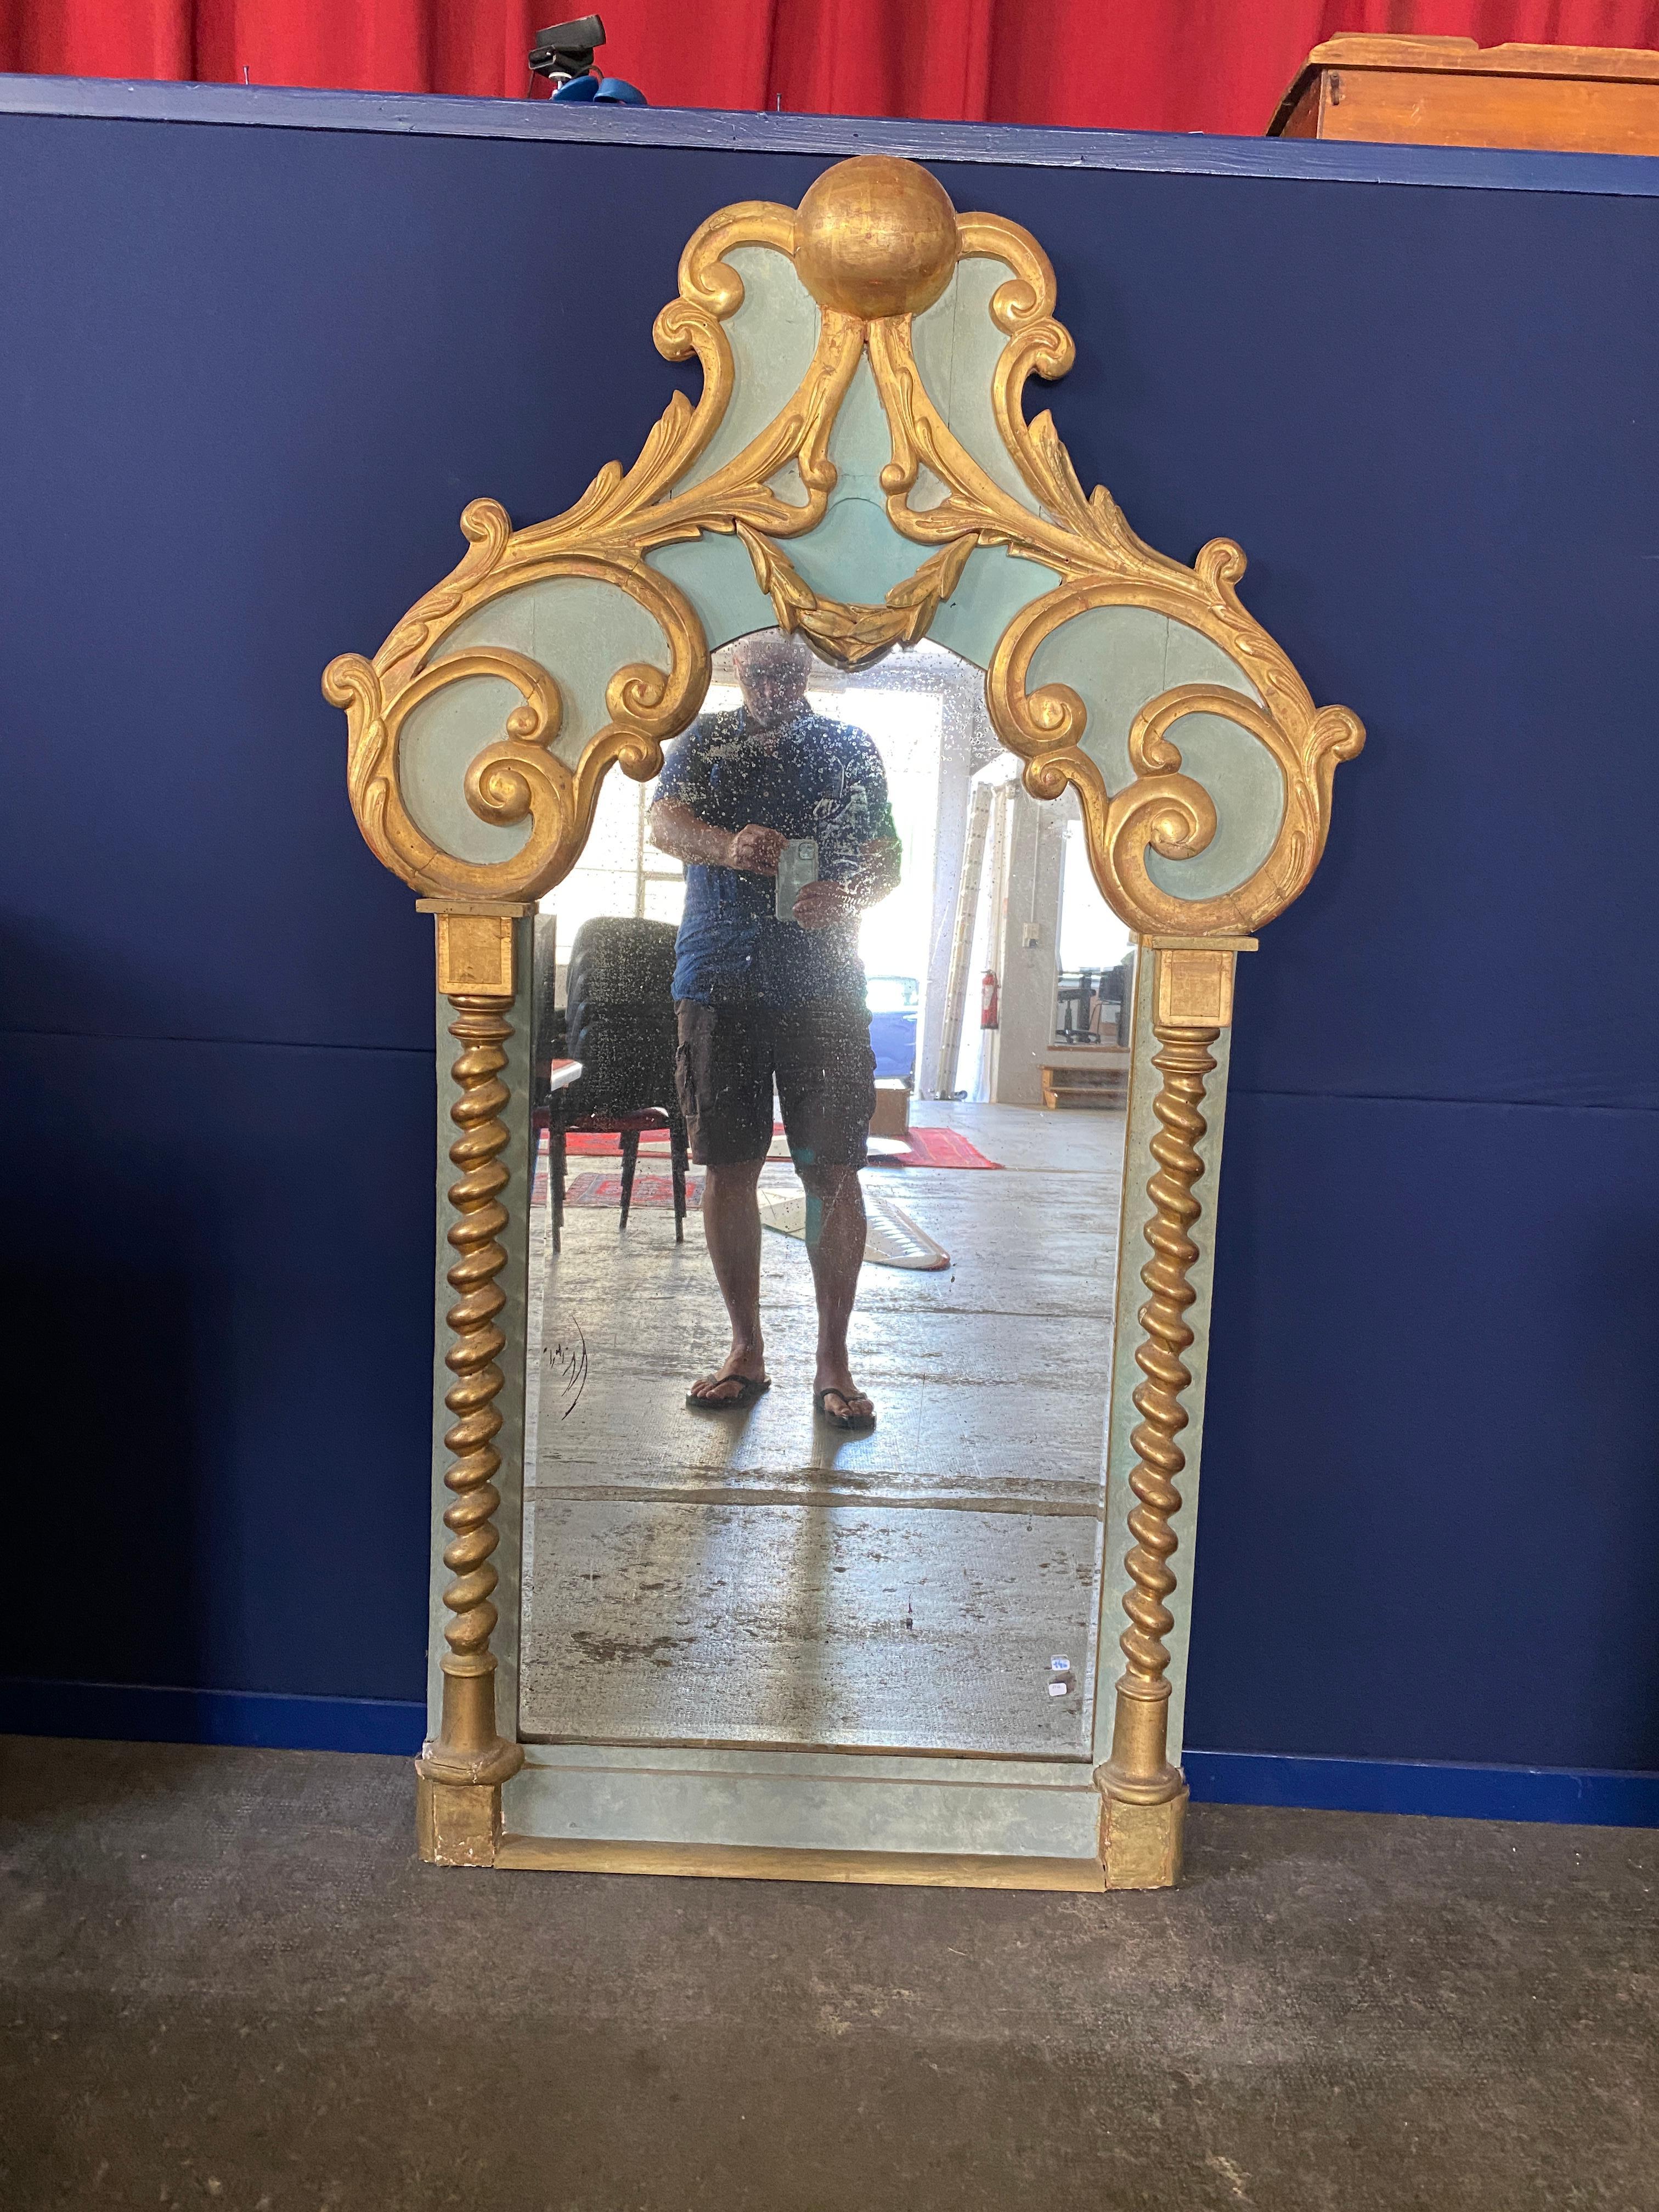 Rare miroir baroque vers 1900-1930, en bois laqué et doré
La tache du miroir est usée.